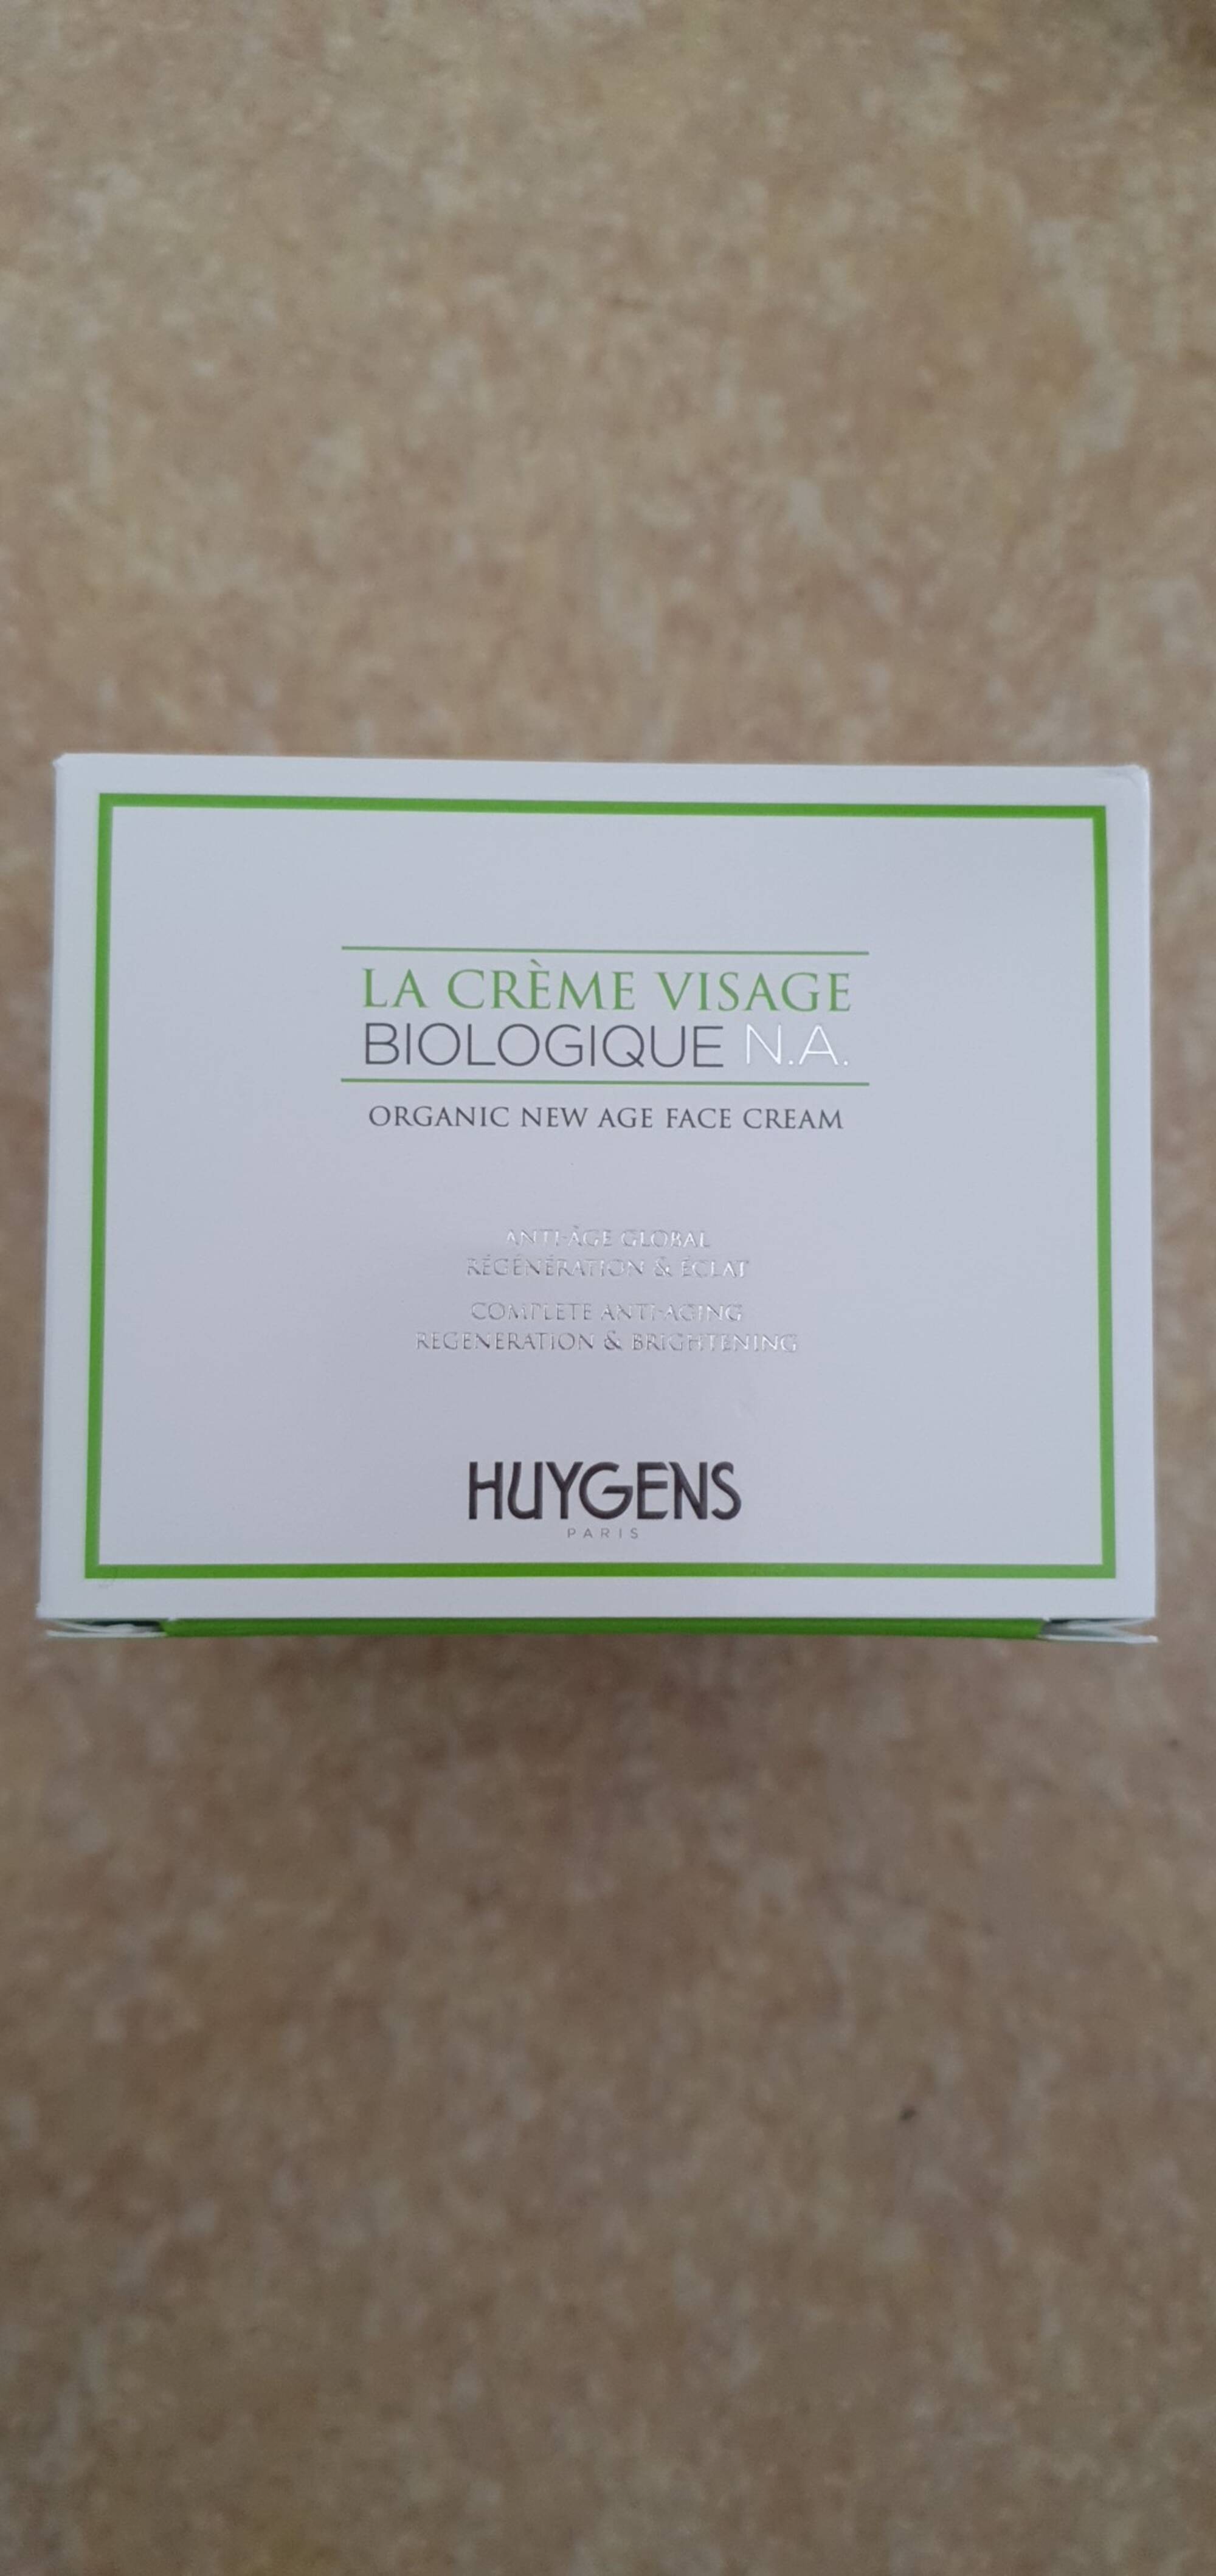 HUYGENS - Biologique N.A. - Crème visage anti-âge global